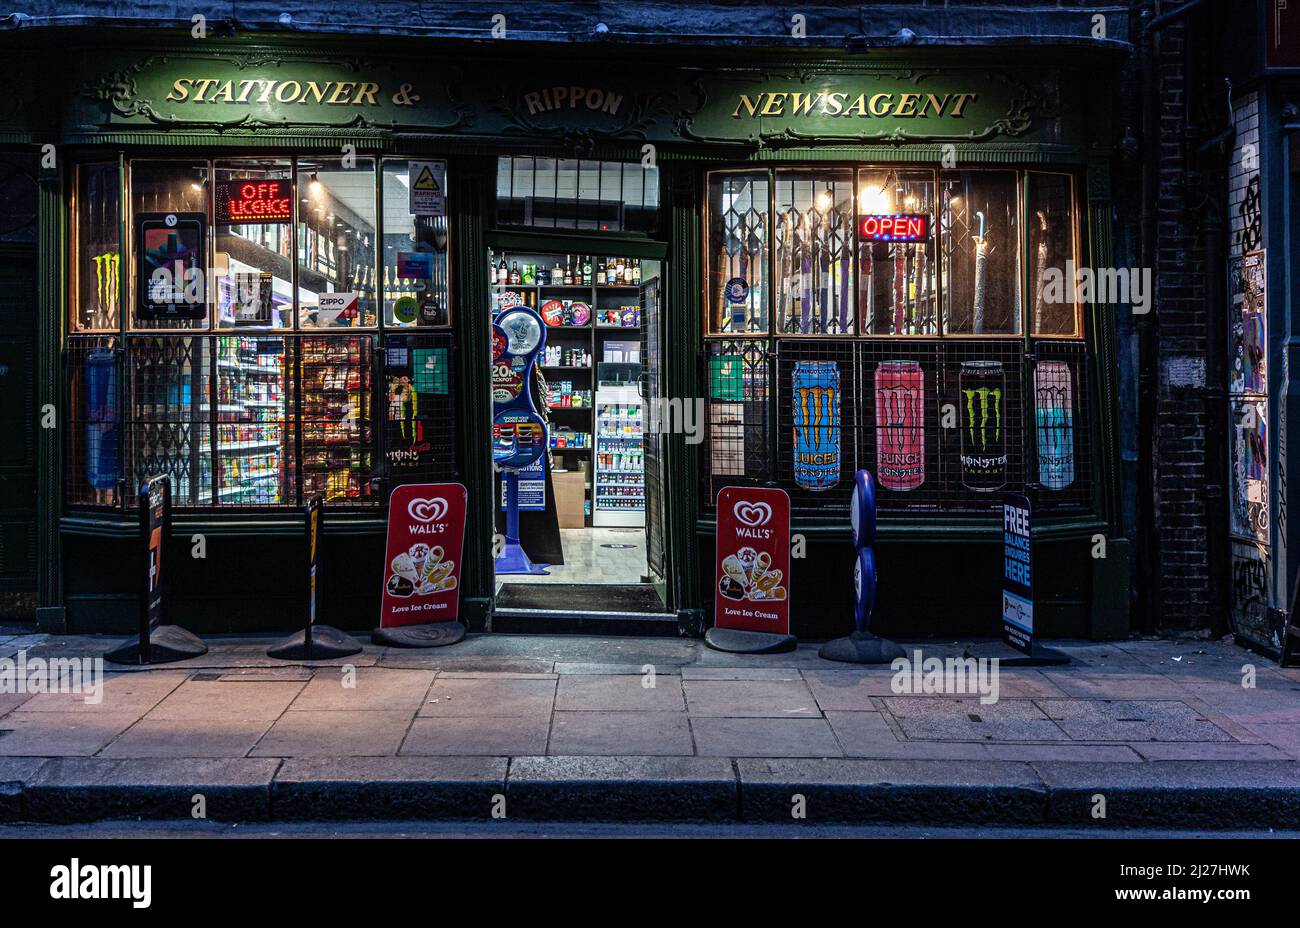 Newsagent shop, Soho, London, England, UK. Stock Photo